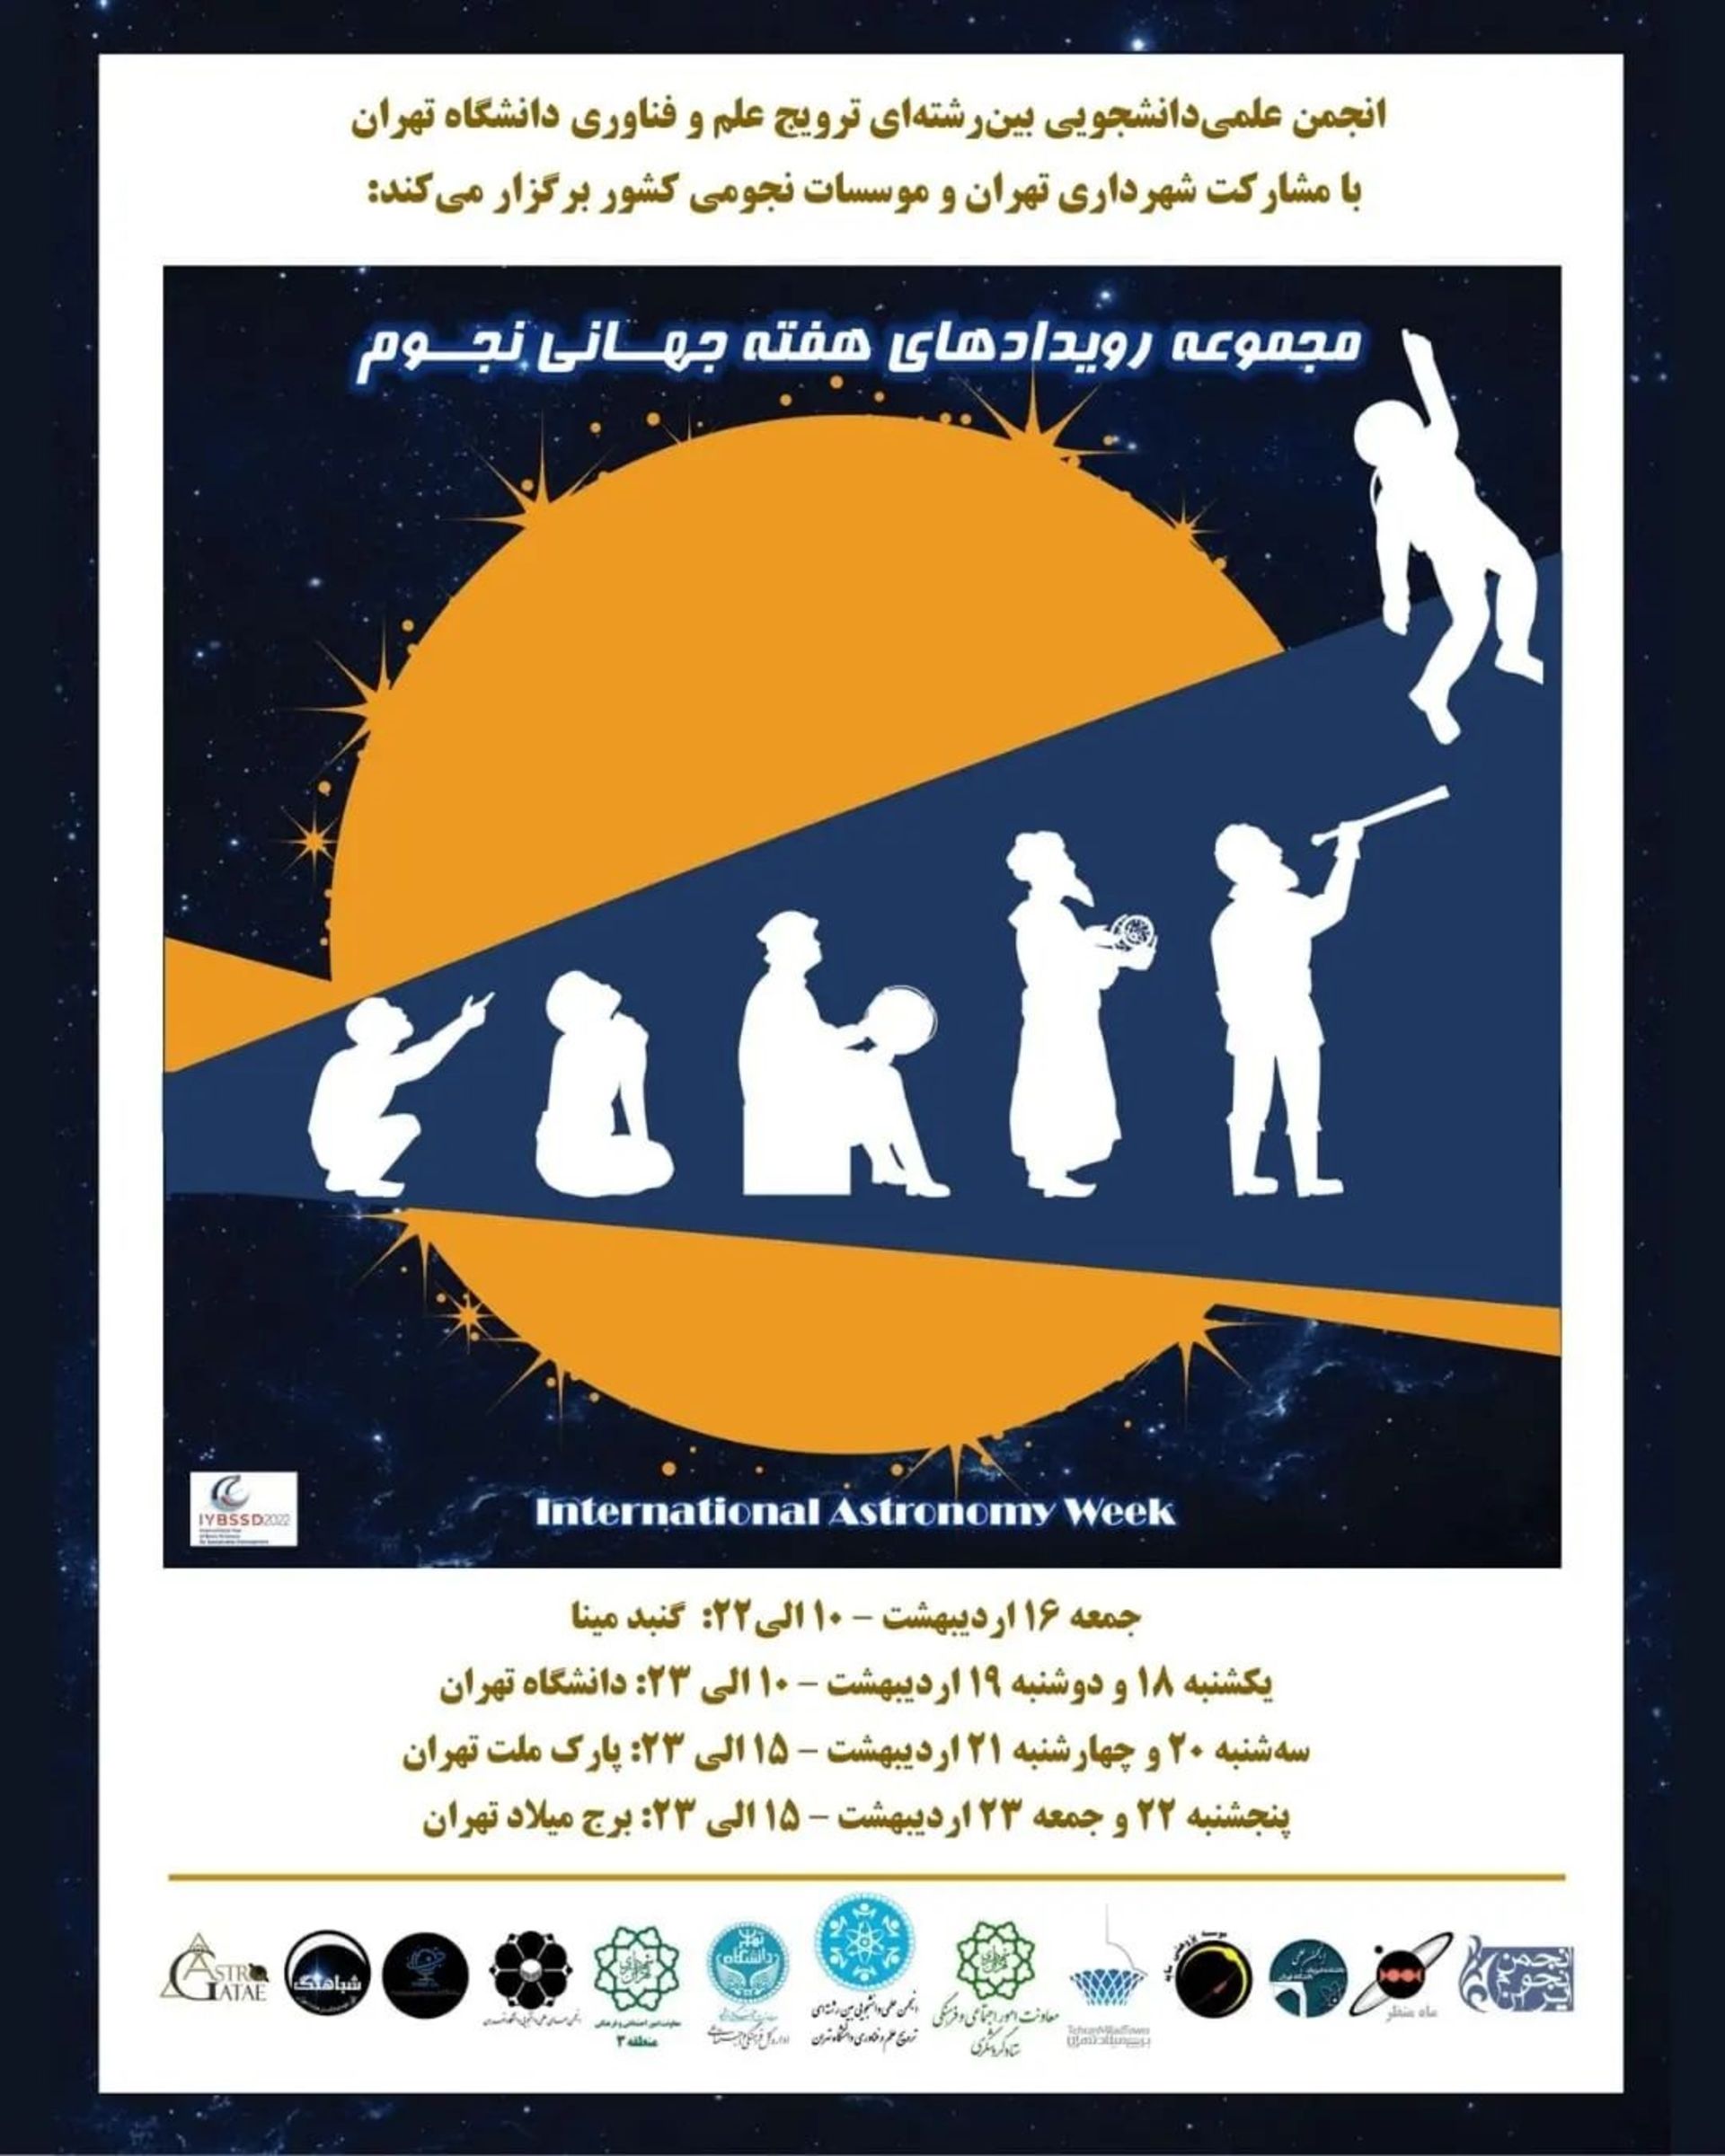 پوستر های انجمن دانشگاه تهران